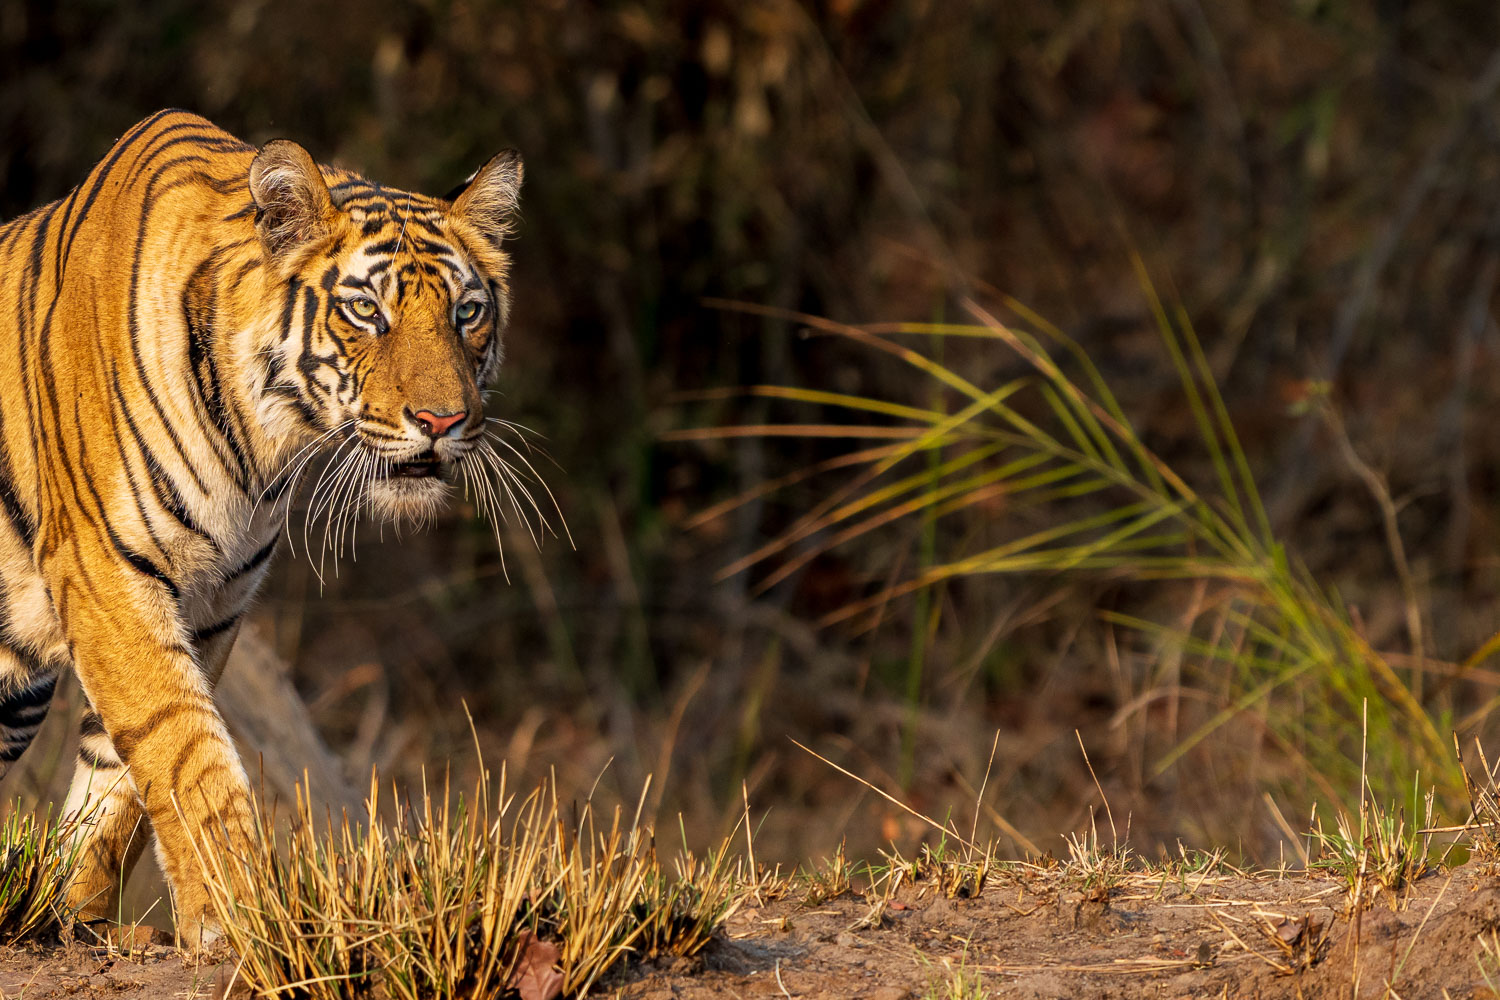 Abgesehen von den 20 Tigern, die wir bisher gesehen haben, konnten wir etliche weitere und sehr interessante Tiere sehen und fotografieren.